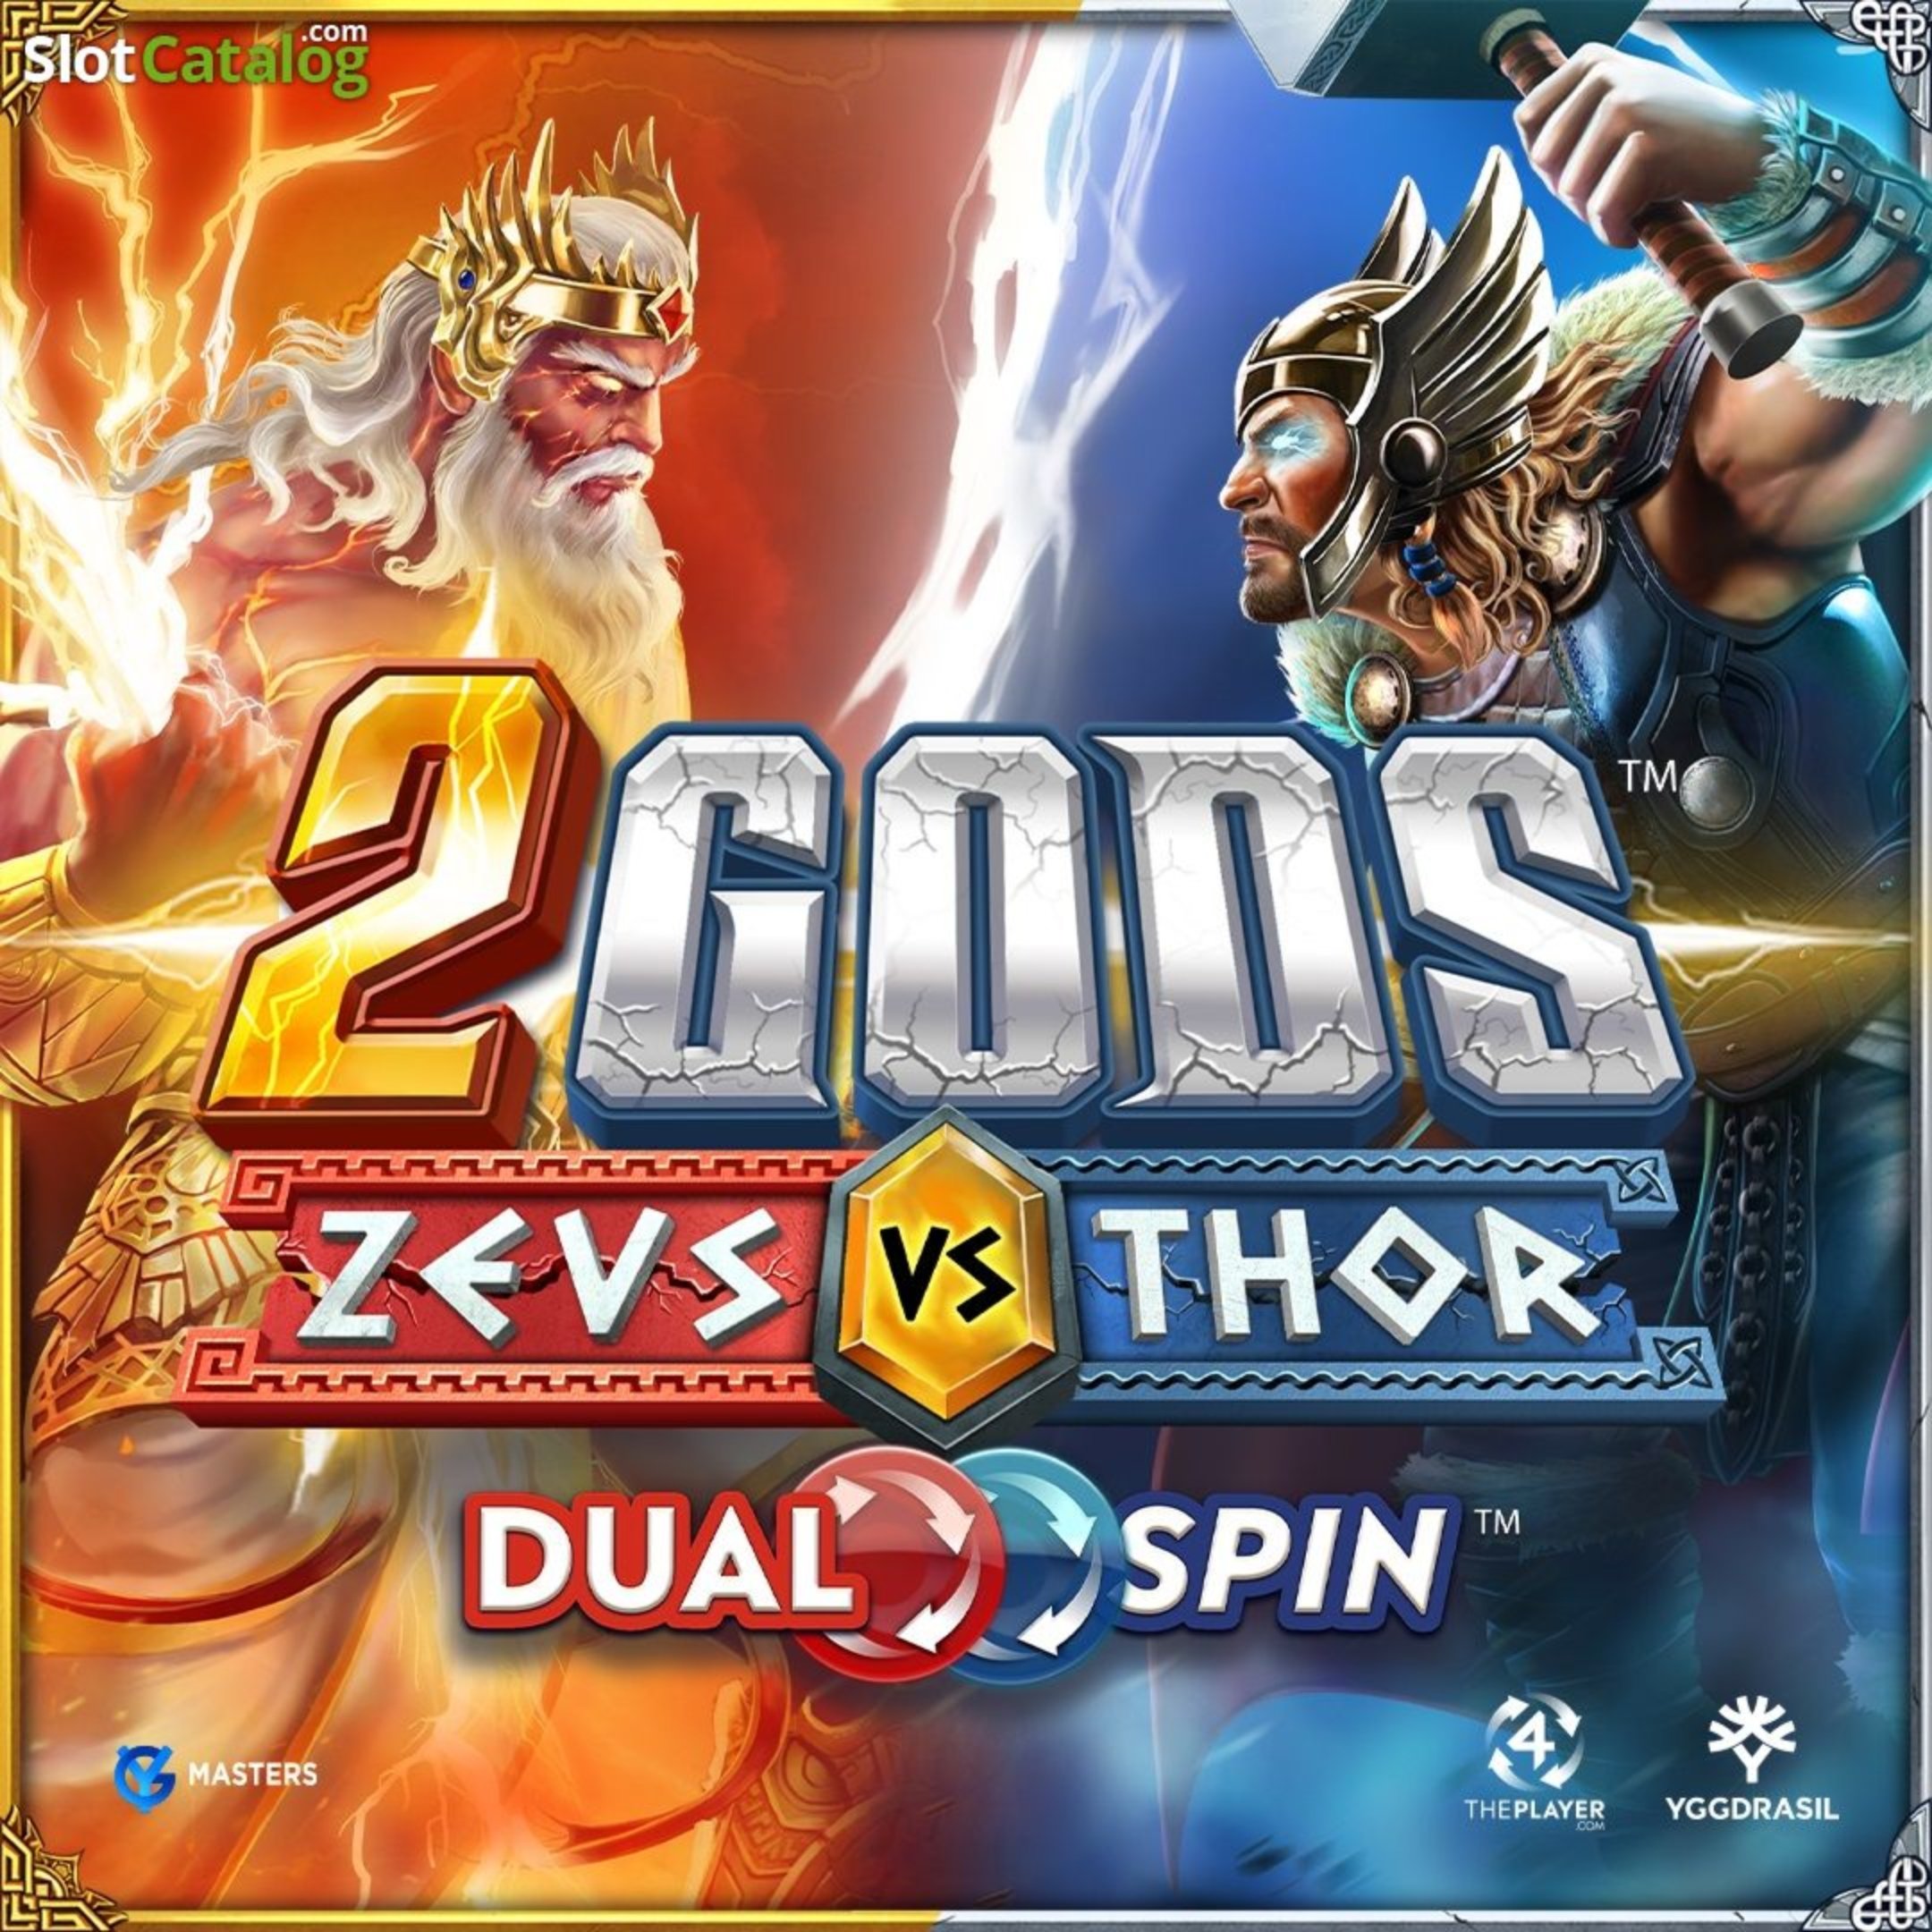 Zeus Vs Thor demo